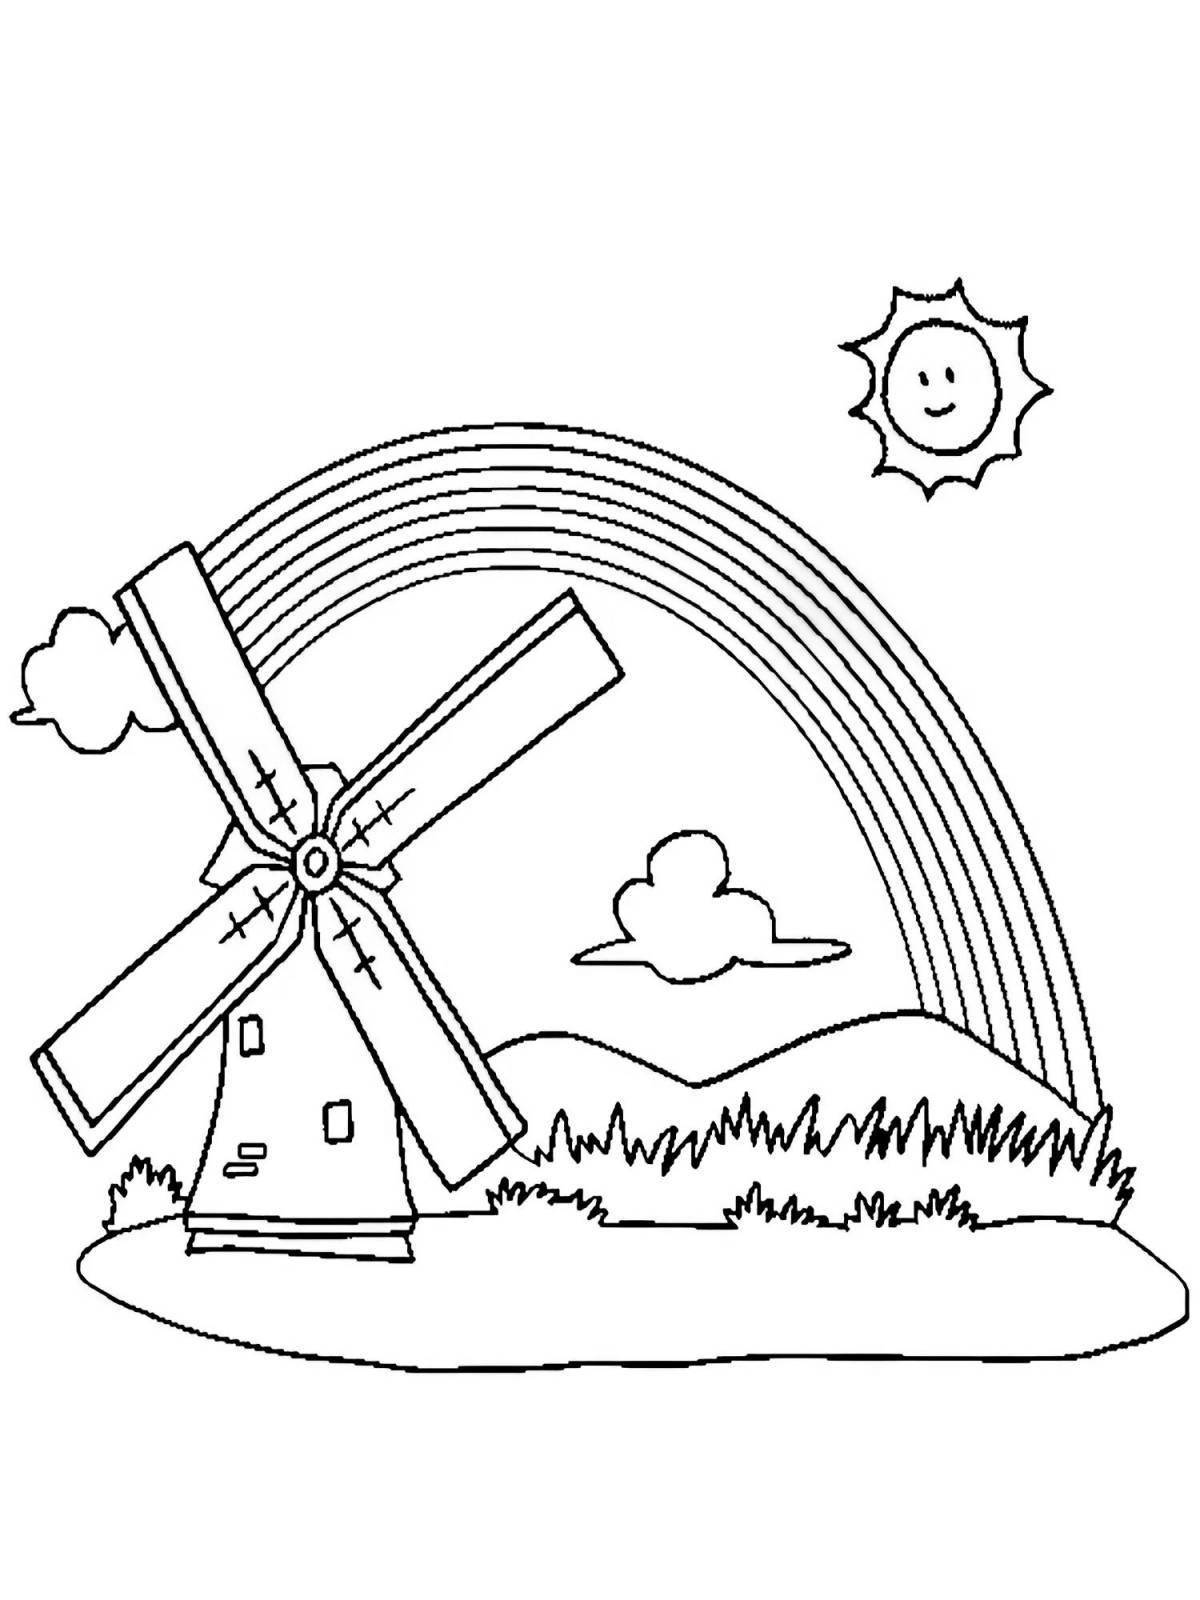 Ветряная мельница раскраска для детей